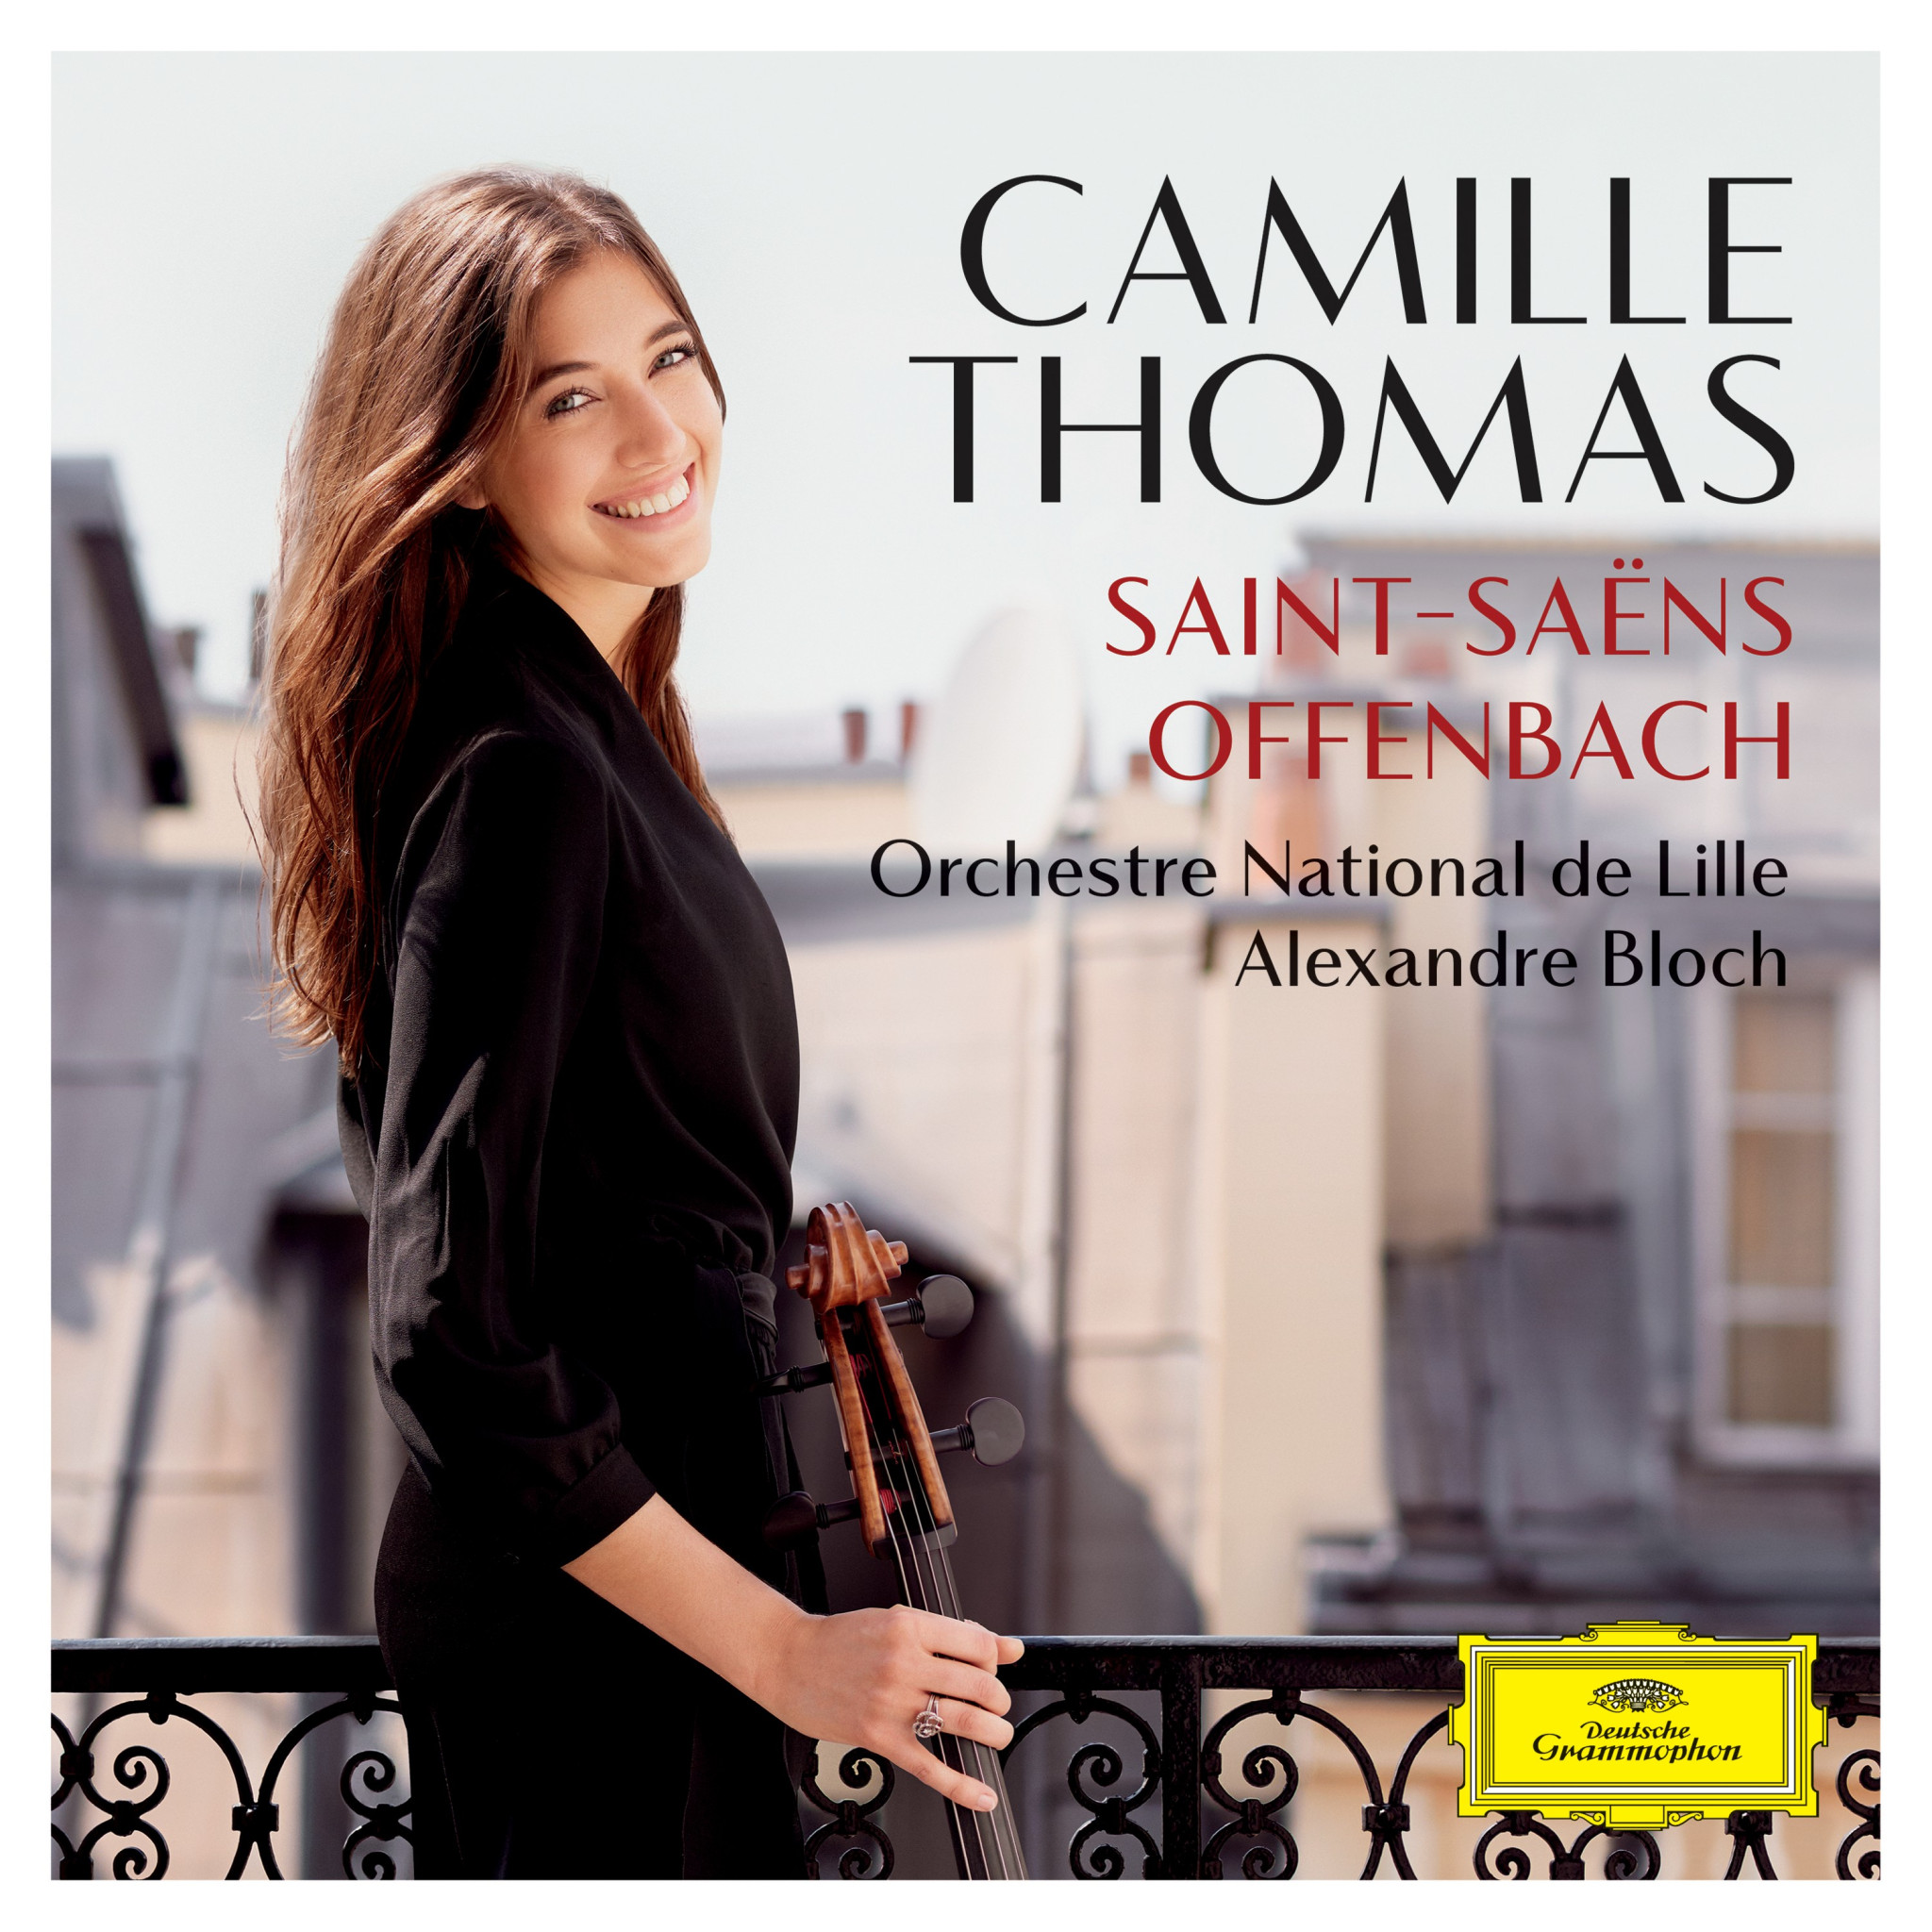 Camille Thomas - Saint-Saens und Offenbach Cover